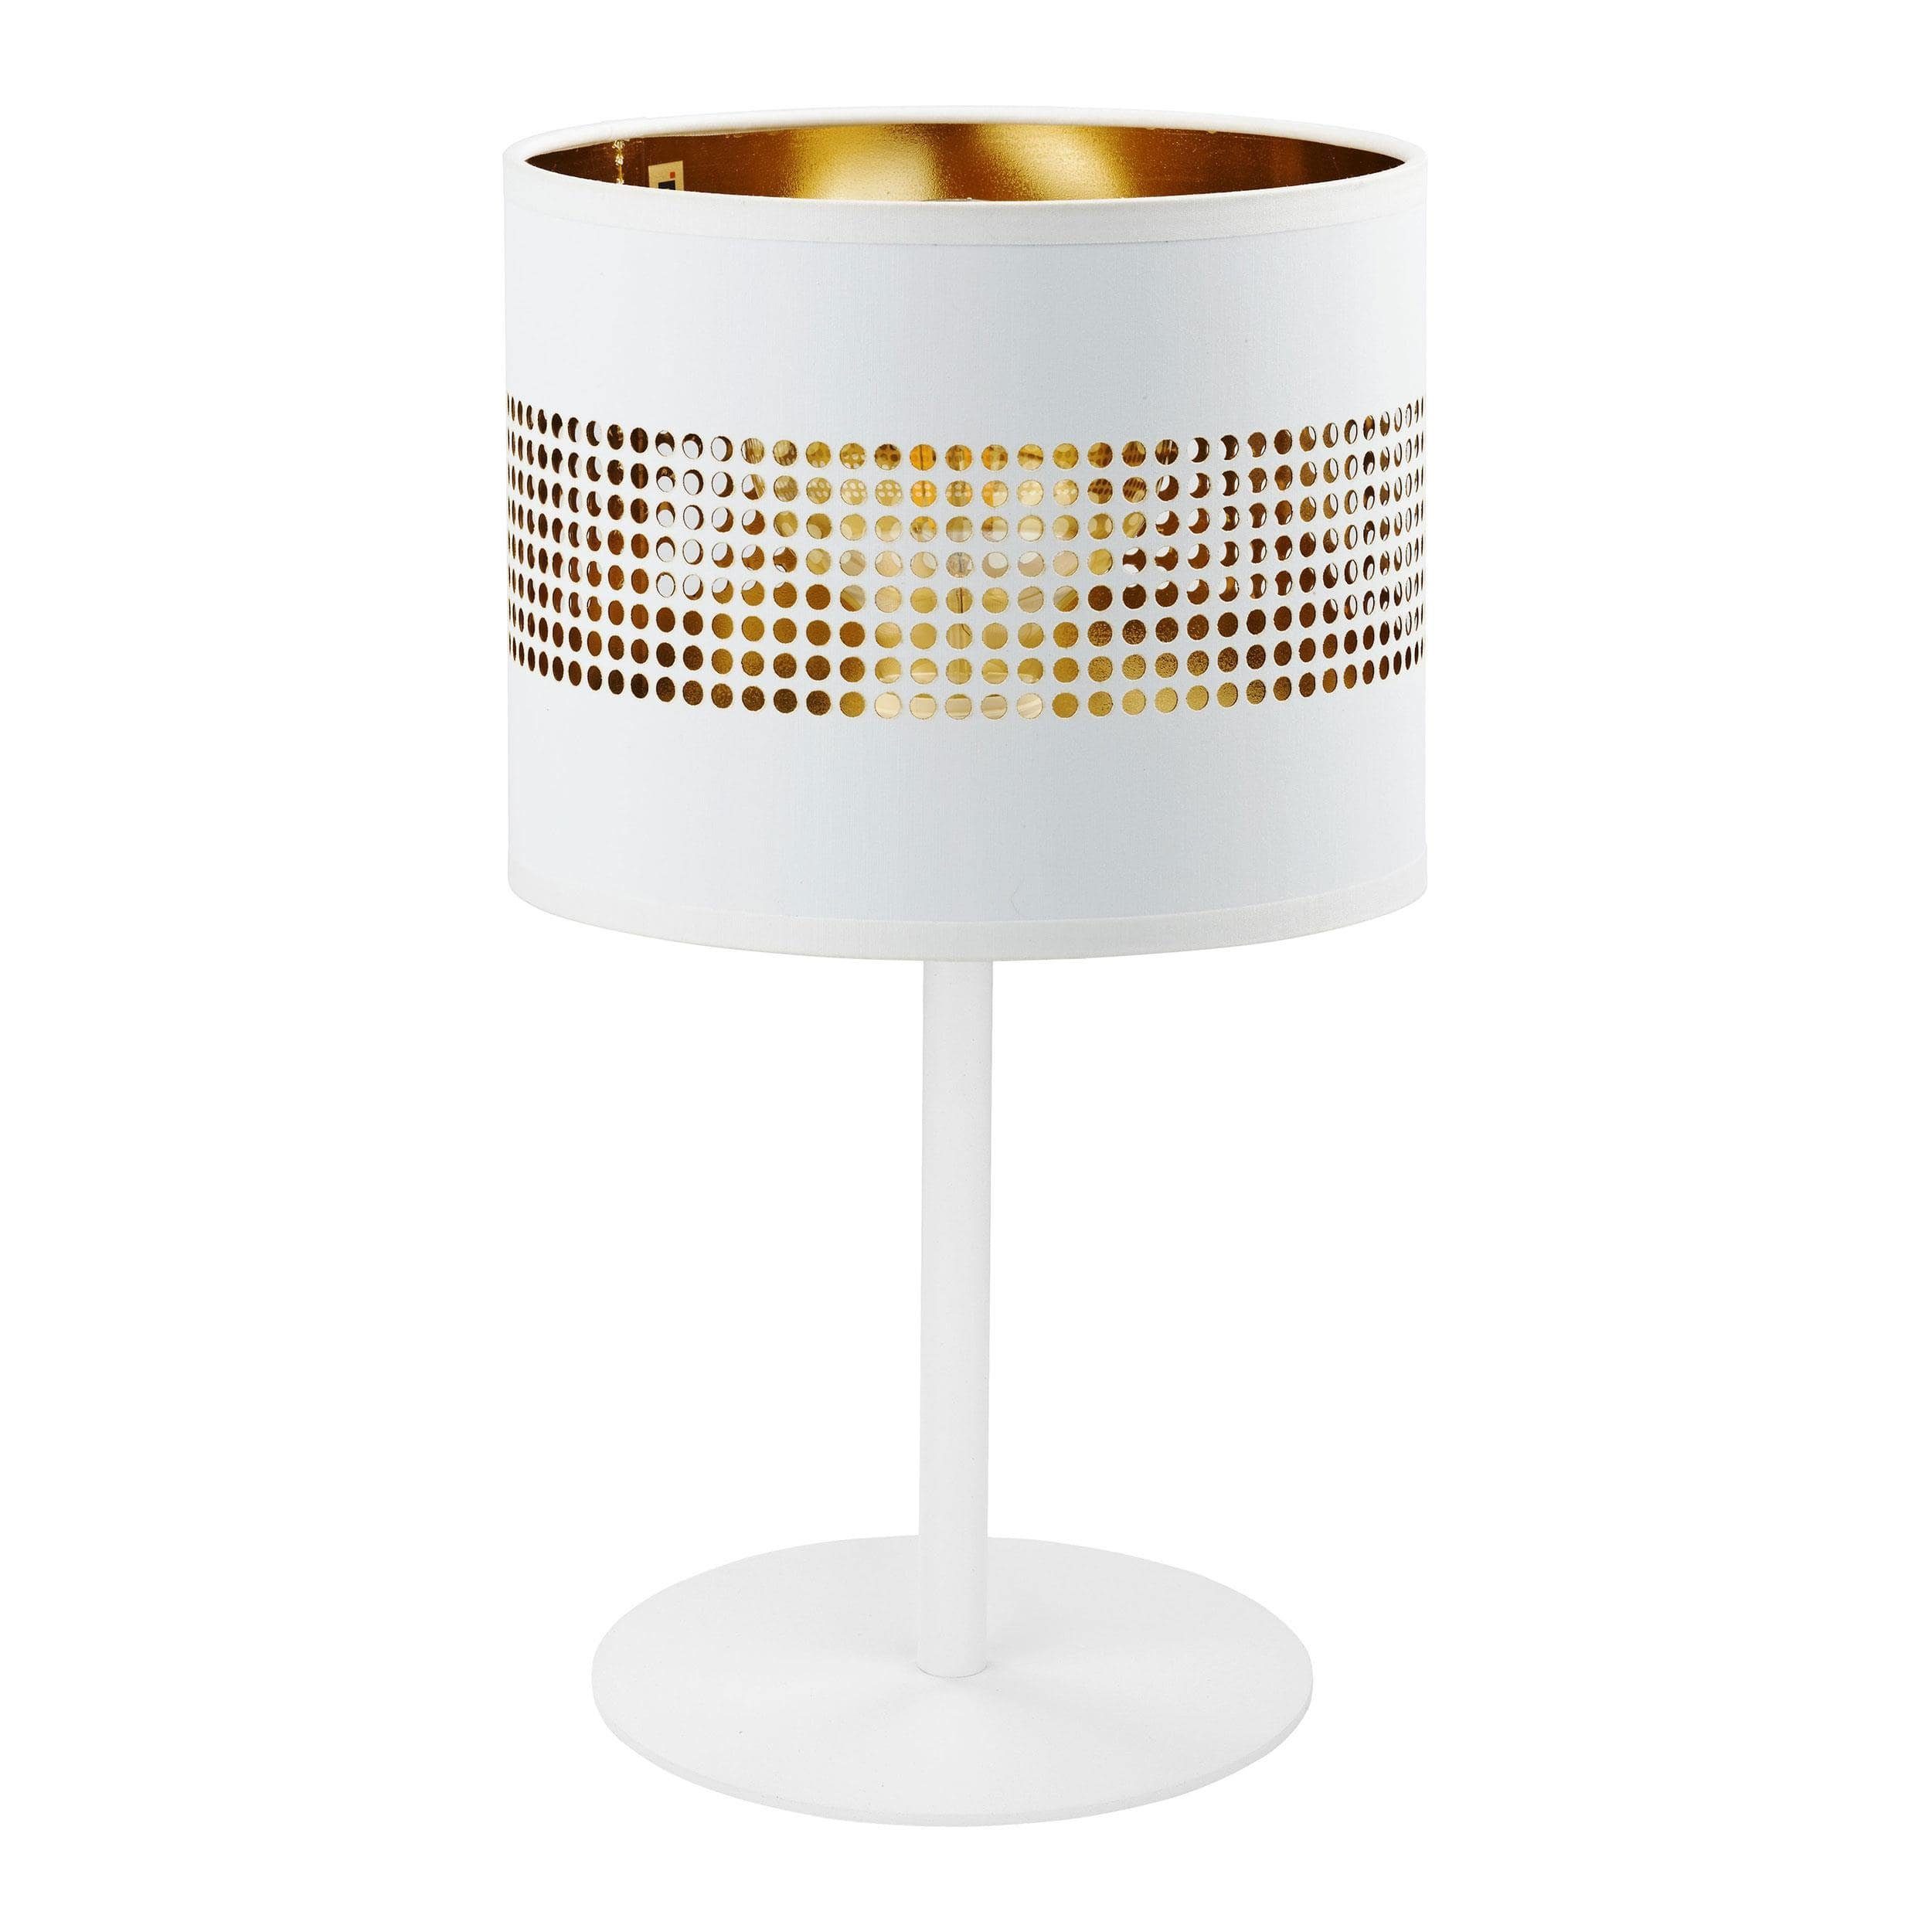 Signature Home Collection Nachttischlampe Tischlampe gold Metall mit Lampenschirm für Nachttisch, ohne Leuchtmittel, warmweiß